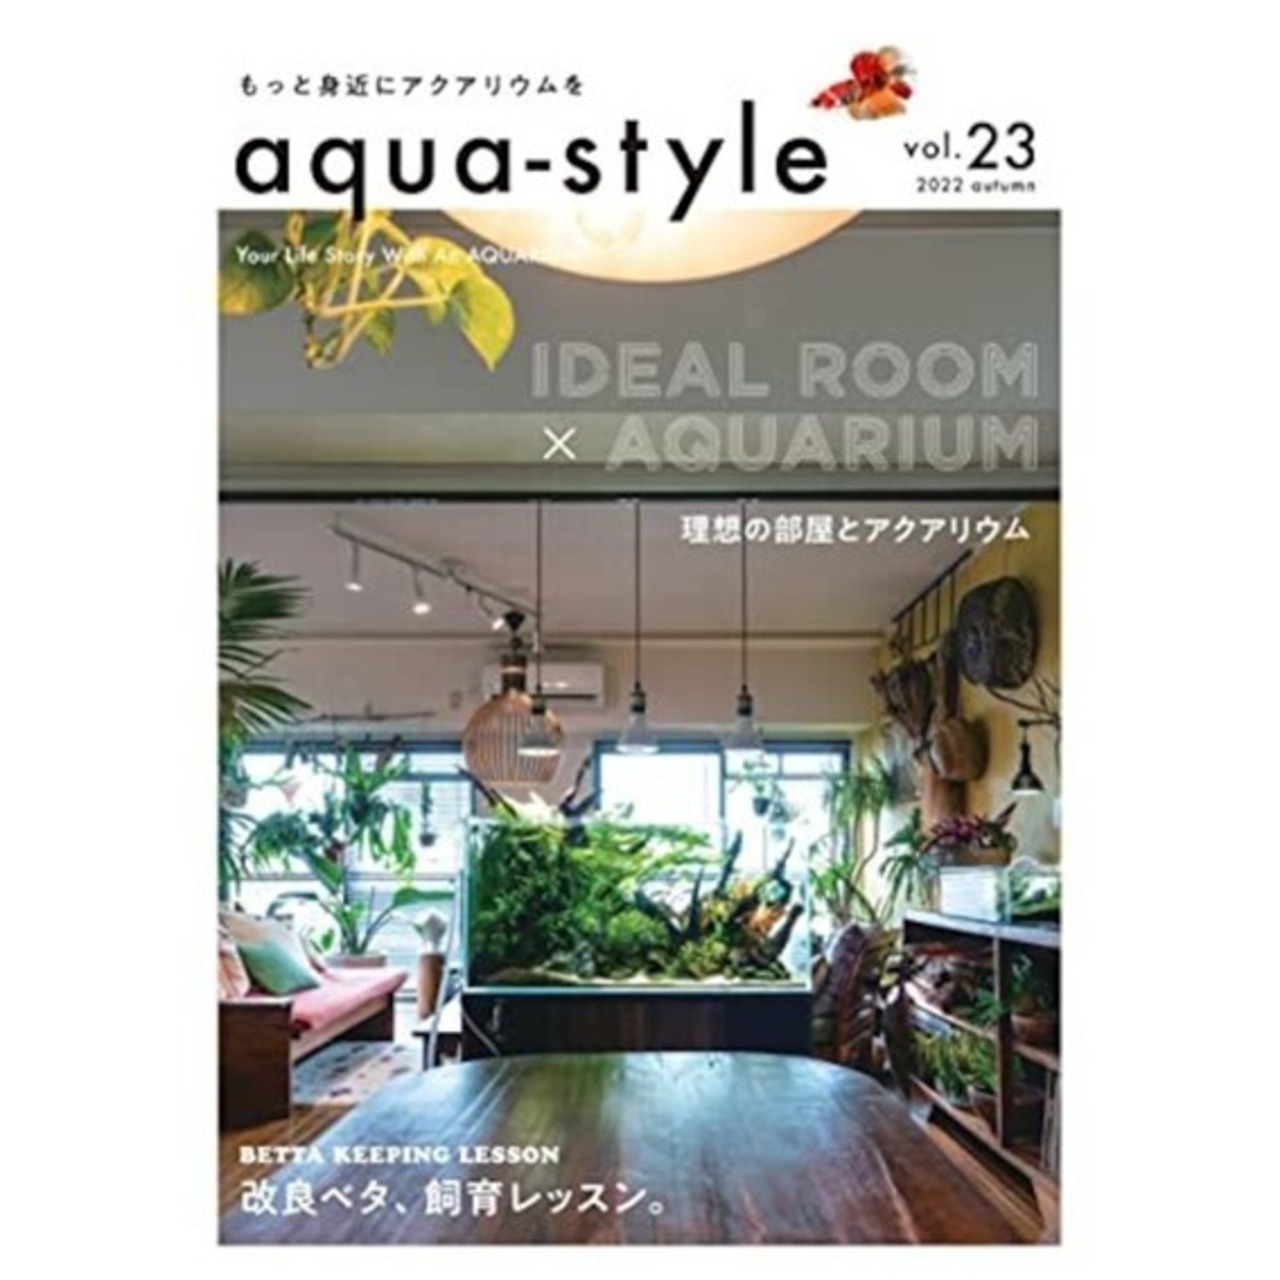 aqua-style【vol.23】